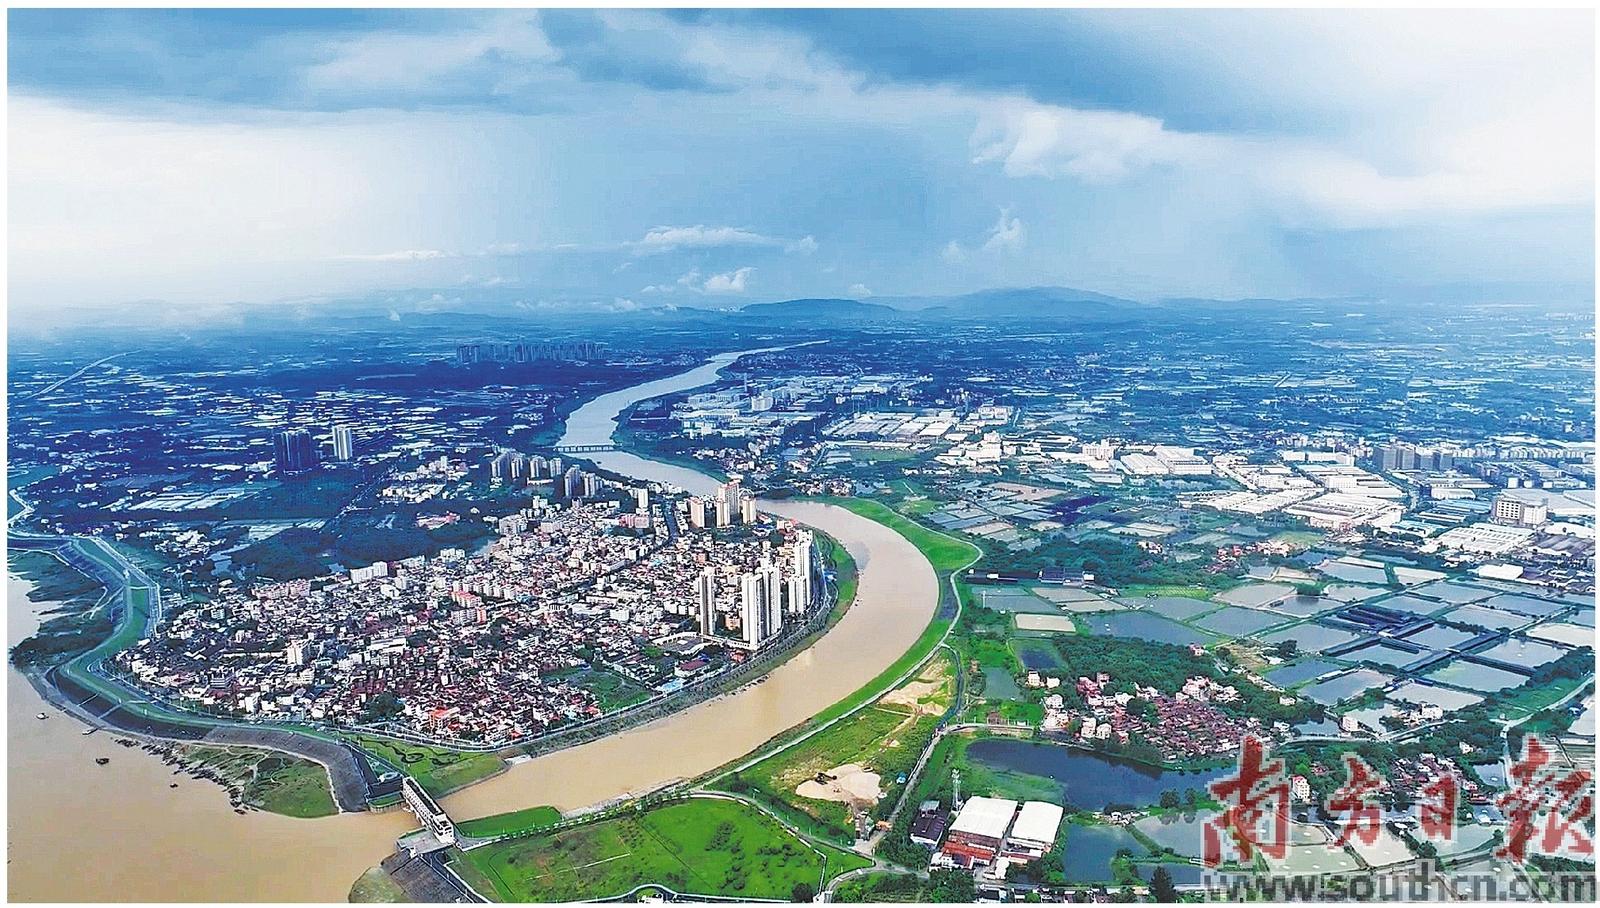 通过科学调度，水利部门成功将北江2号洪水的量级控制在北江大堤安全泄量以内。图为北江大堤芦苞段。受访者供图